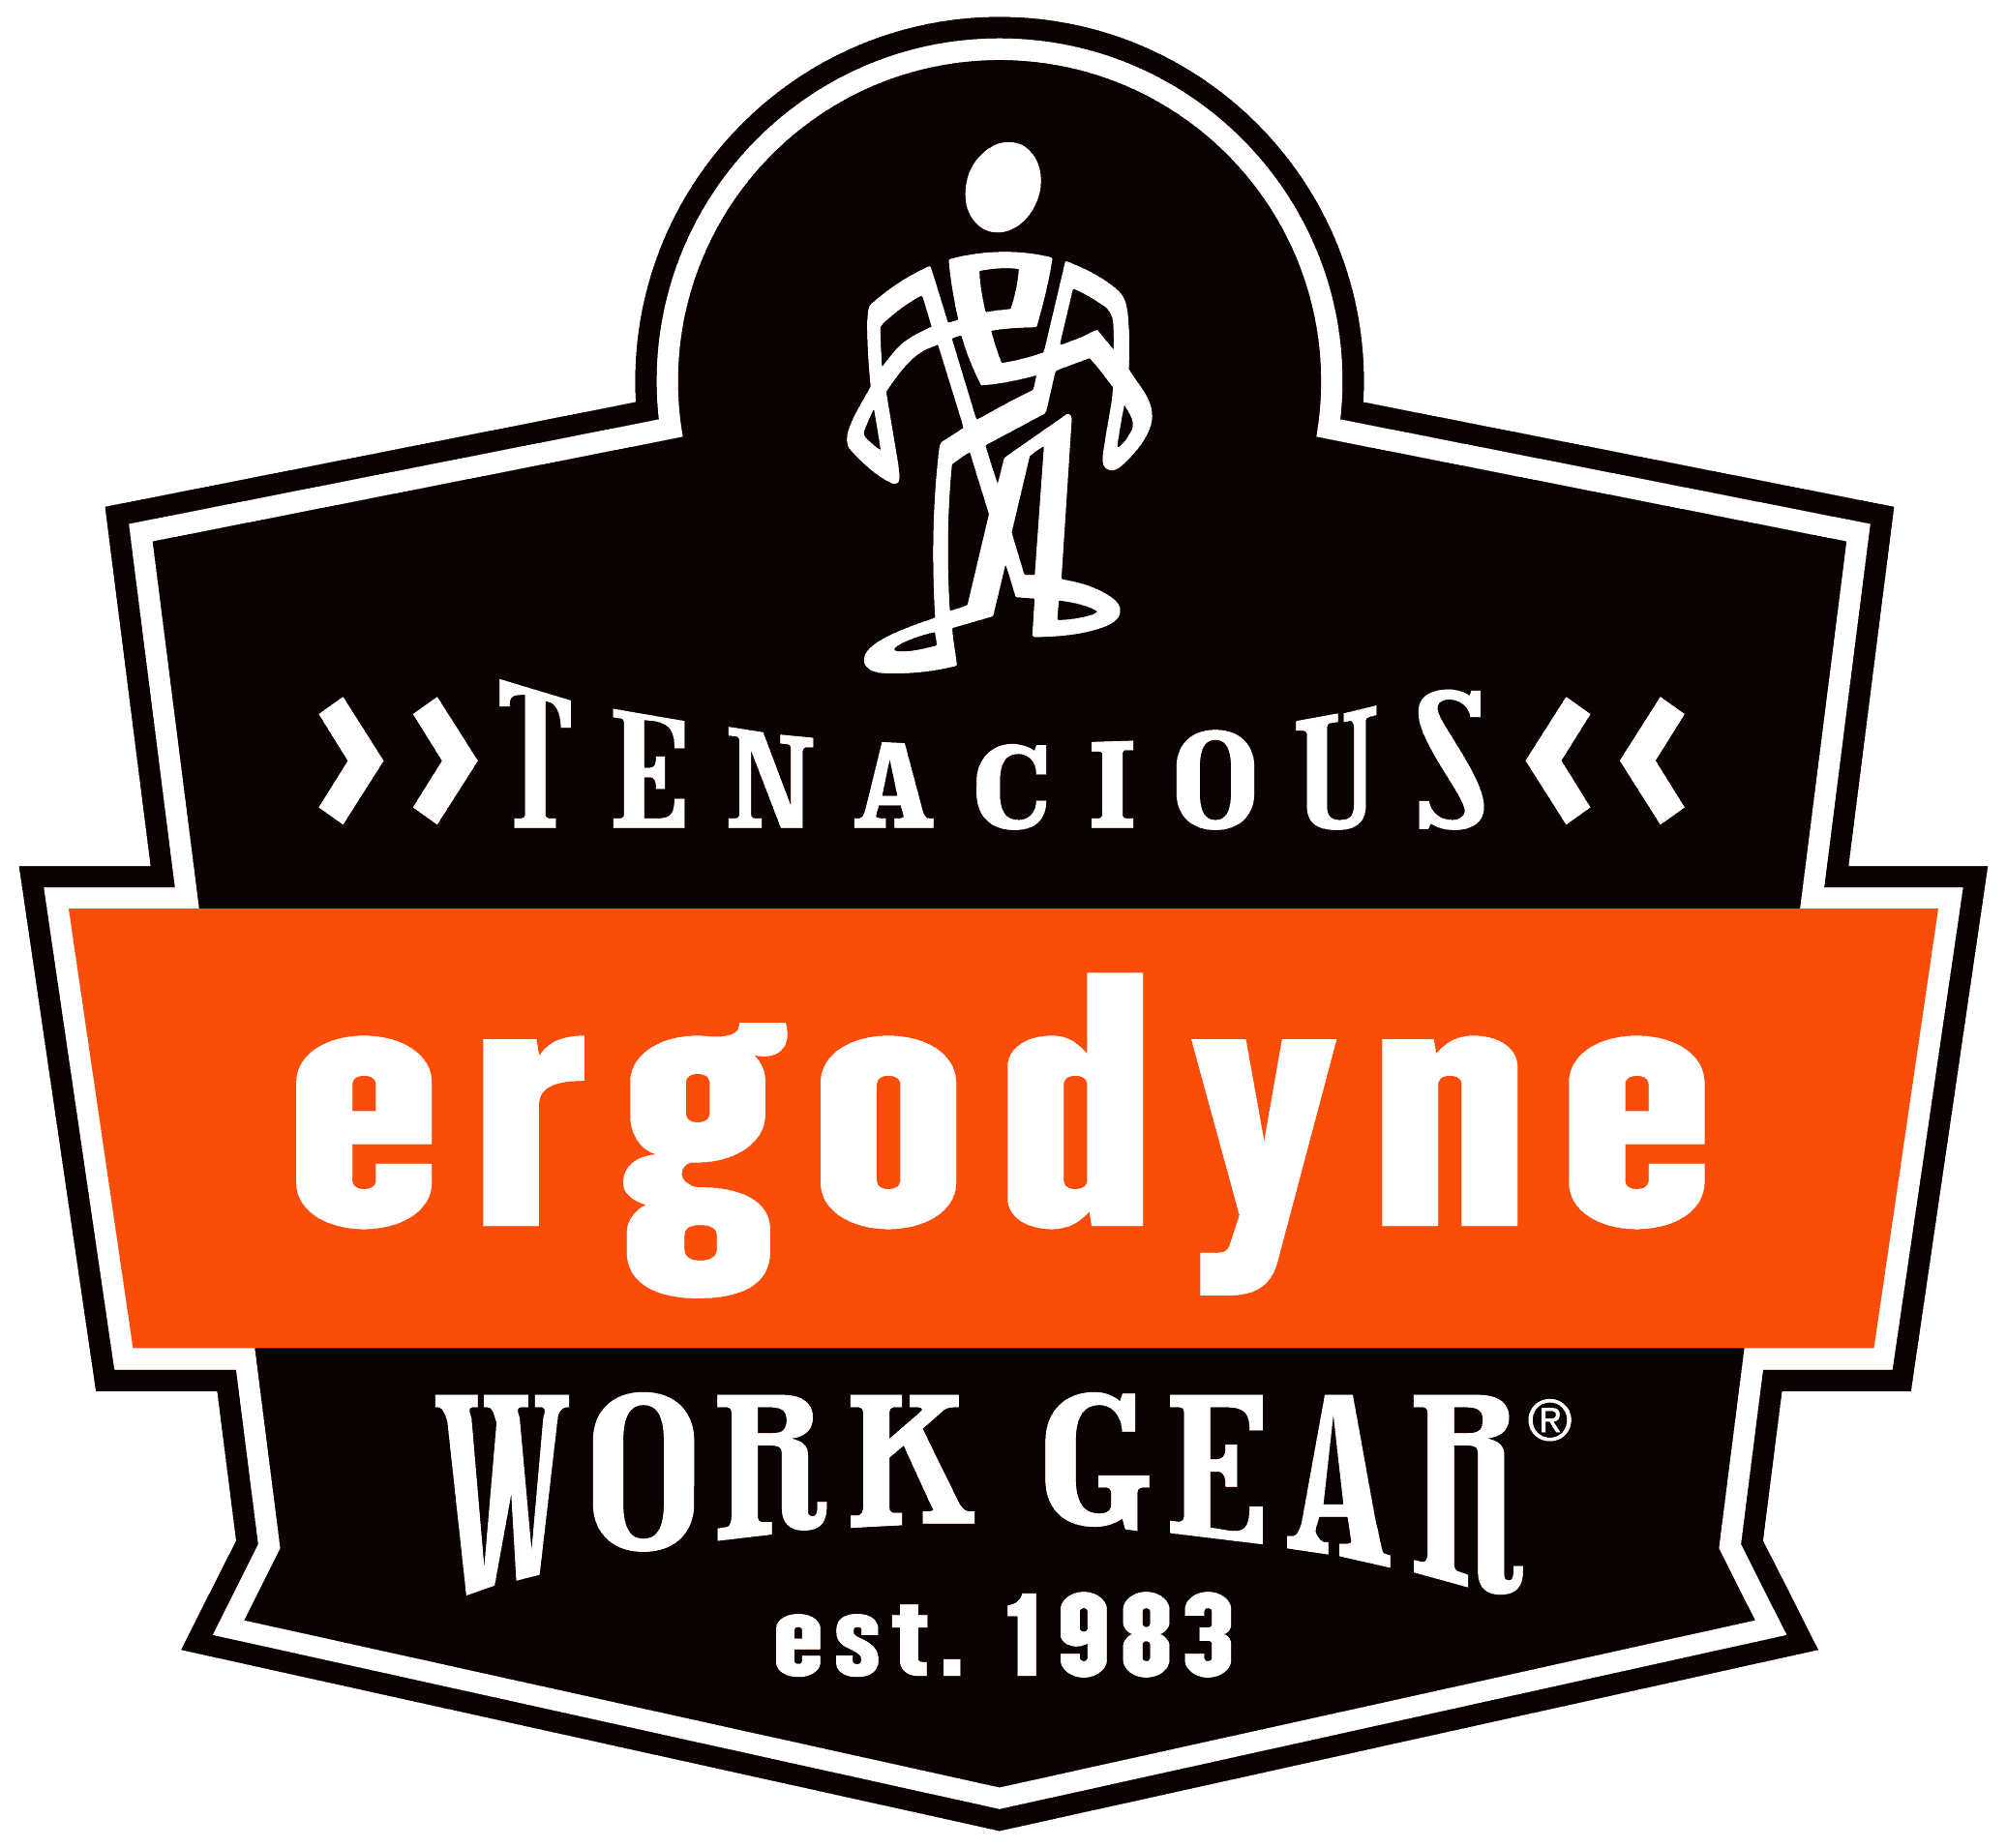 Primary Ergodyne Logo